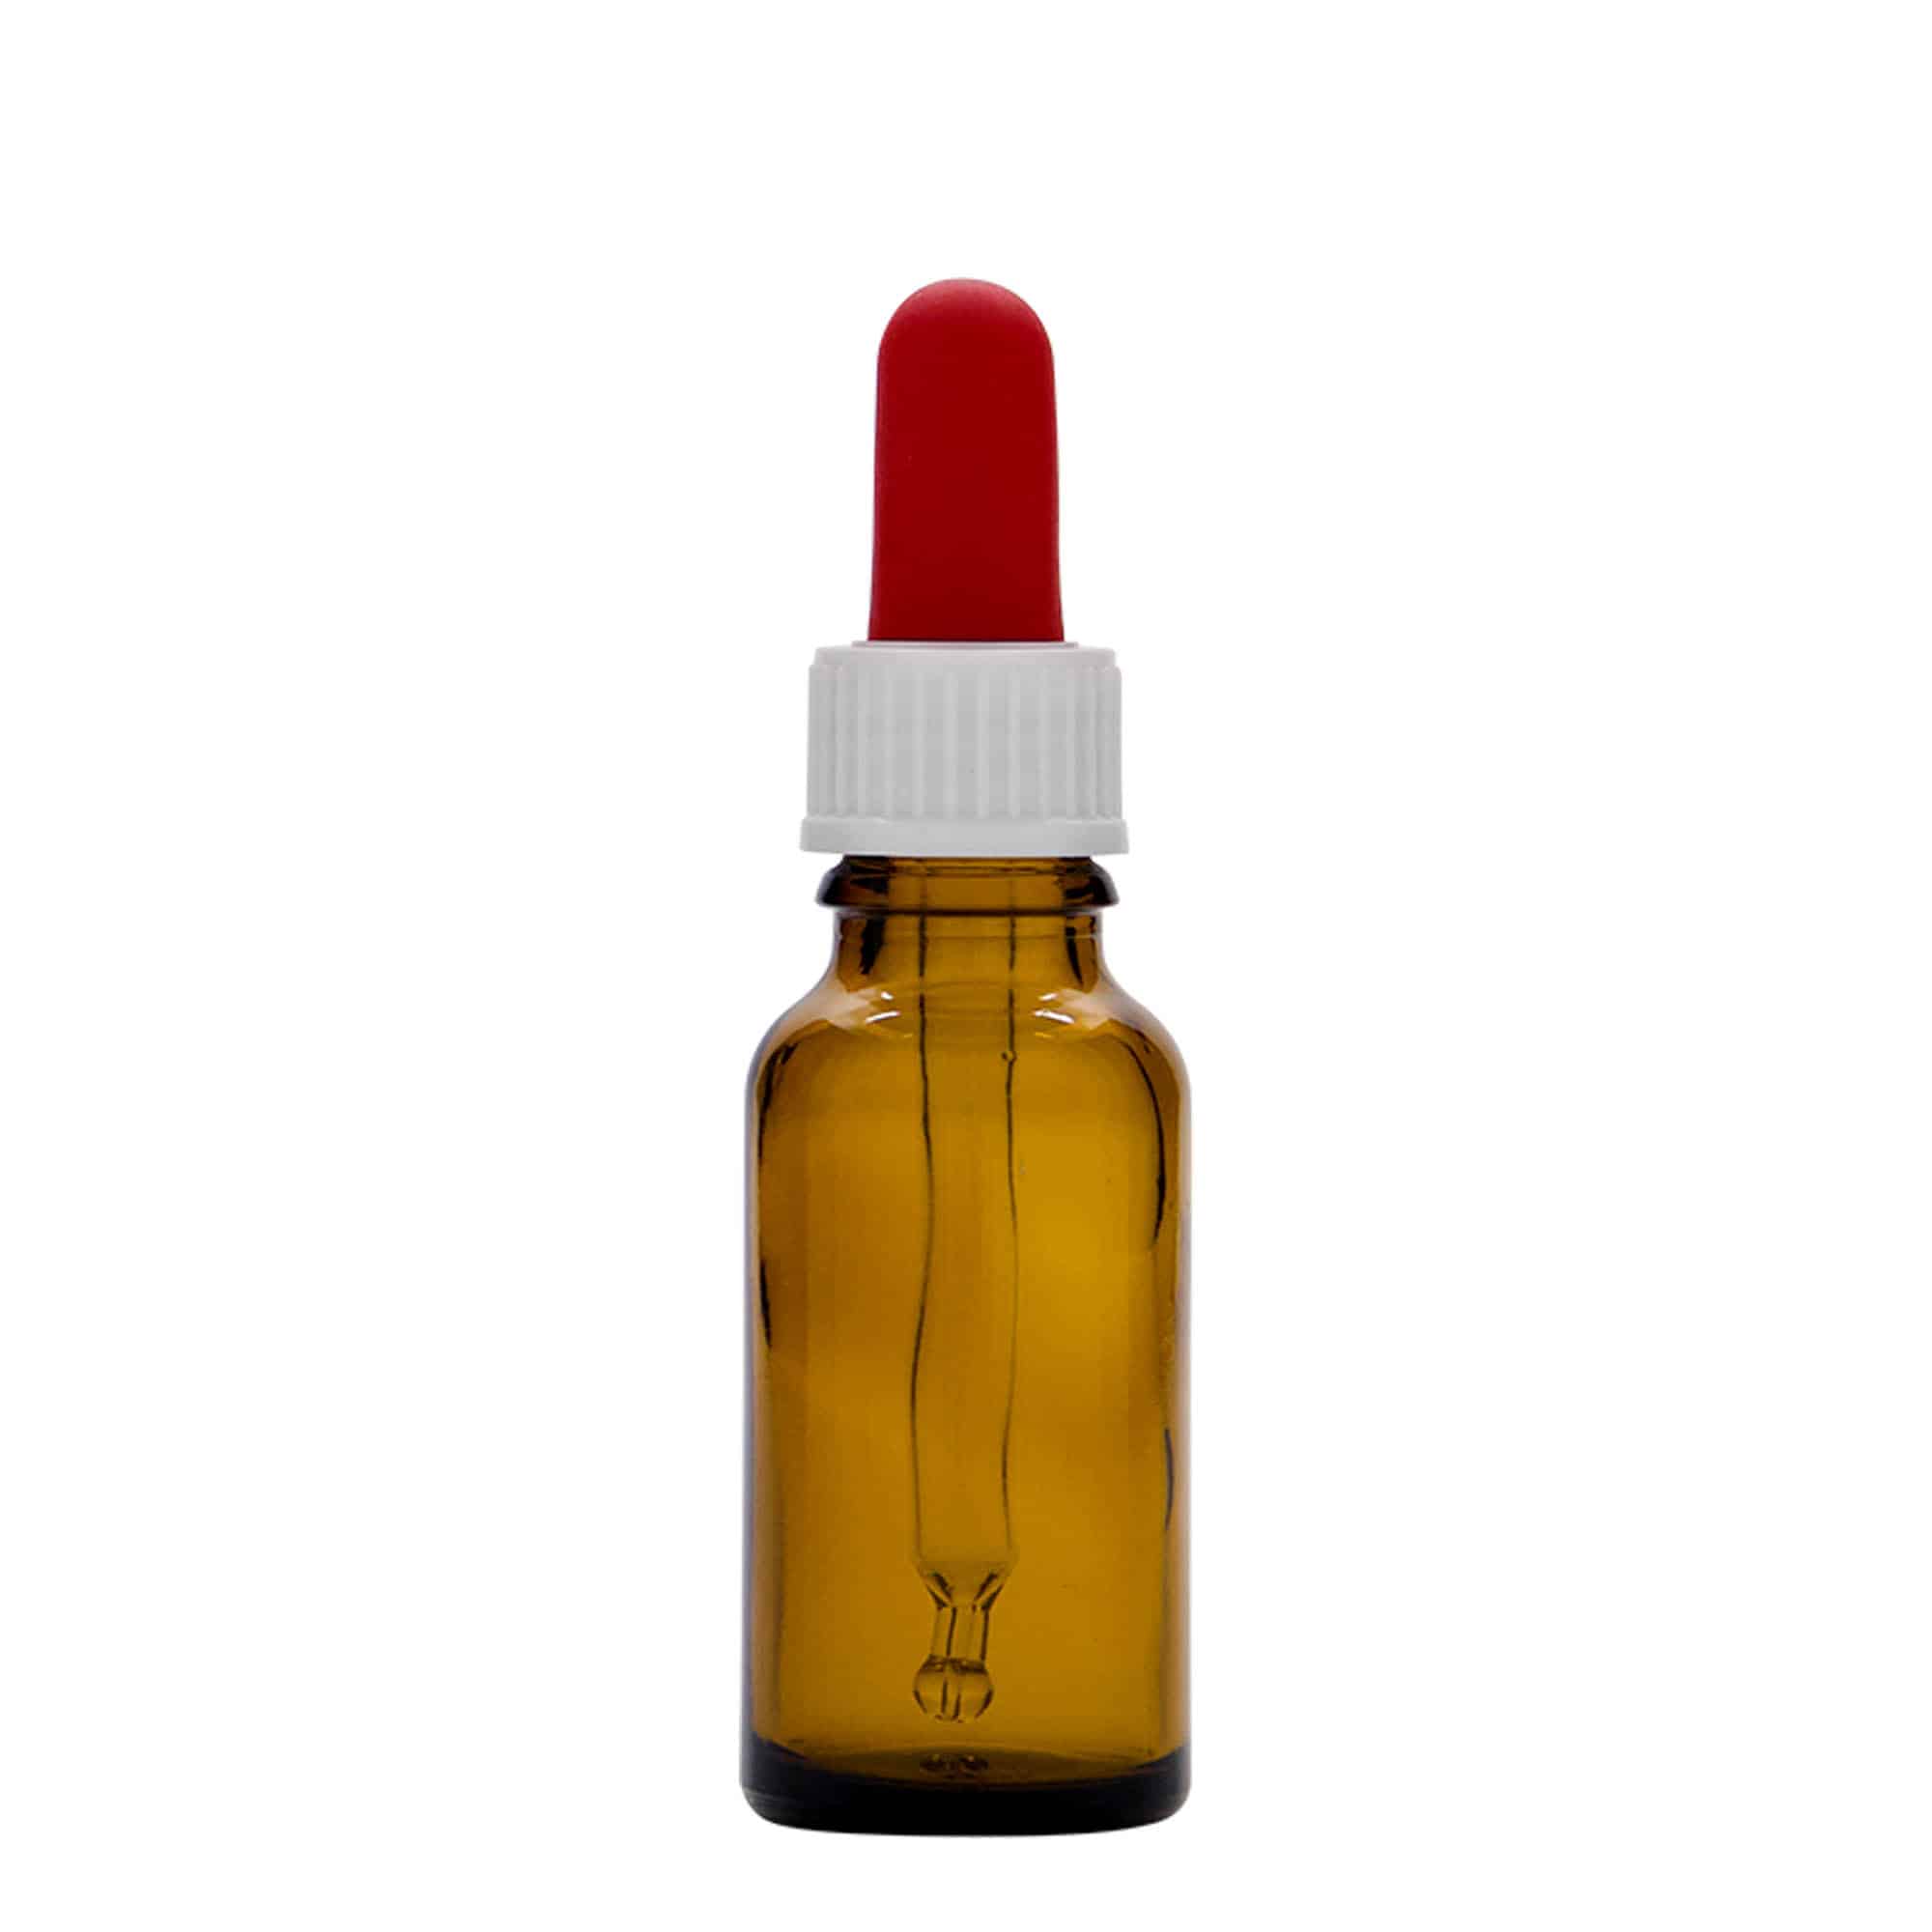 20 ml butelka farmaceutyczna z pipetą, szkło, kolor brązowy, zamknięcie: DIN 18